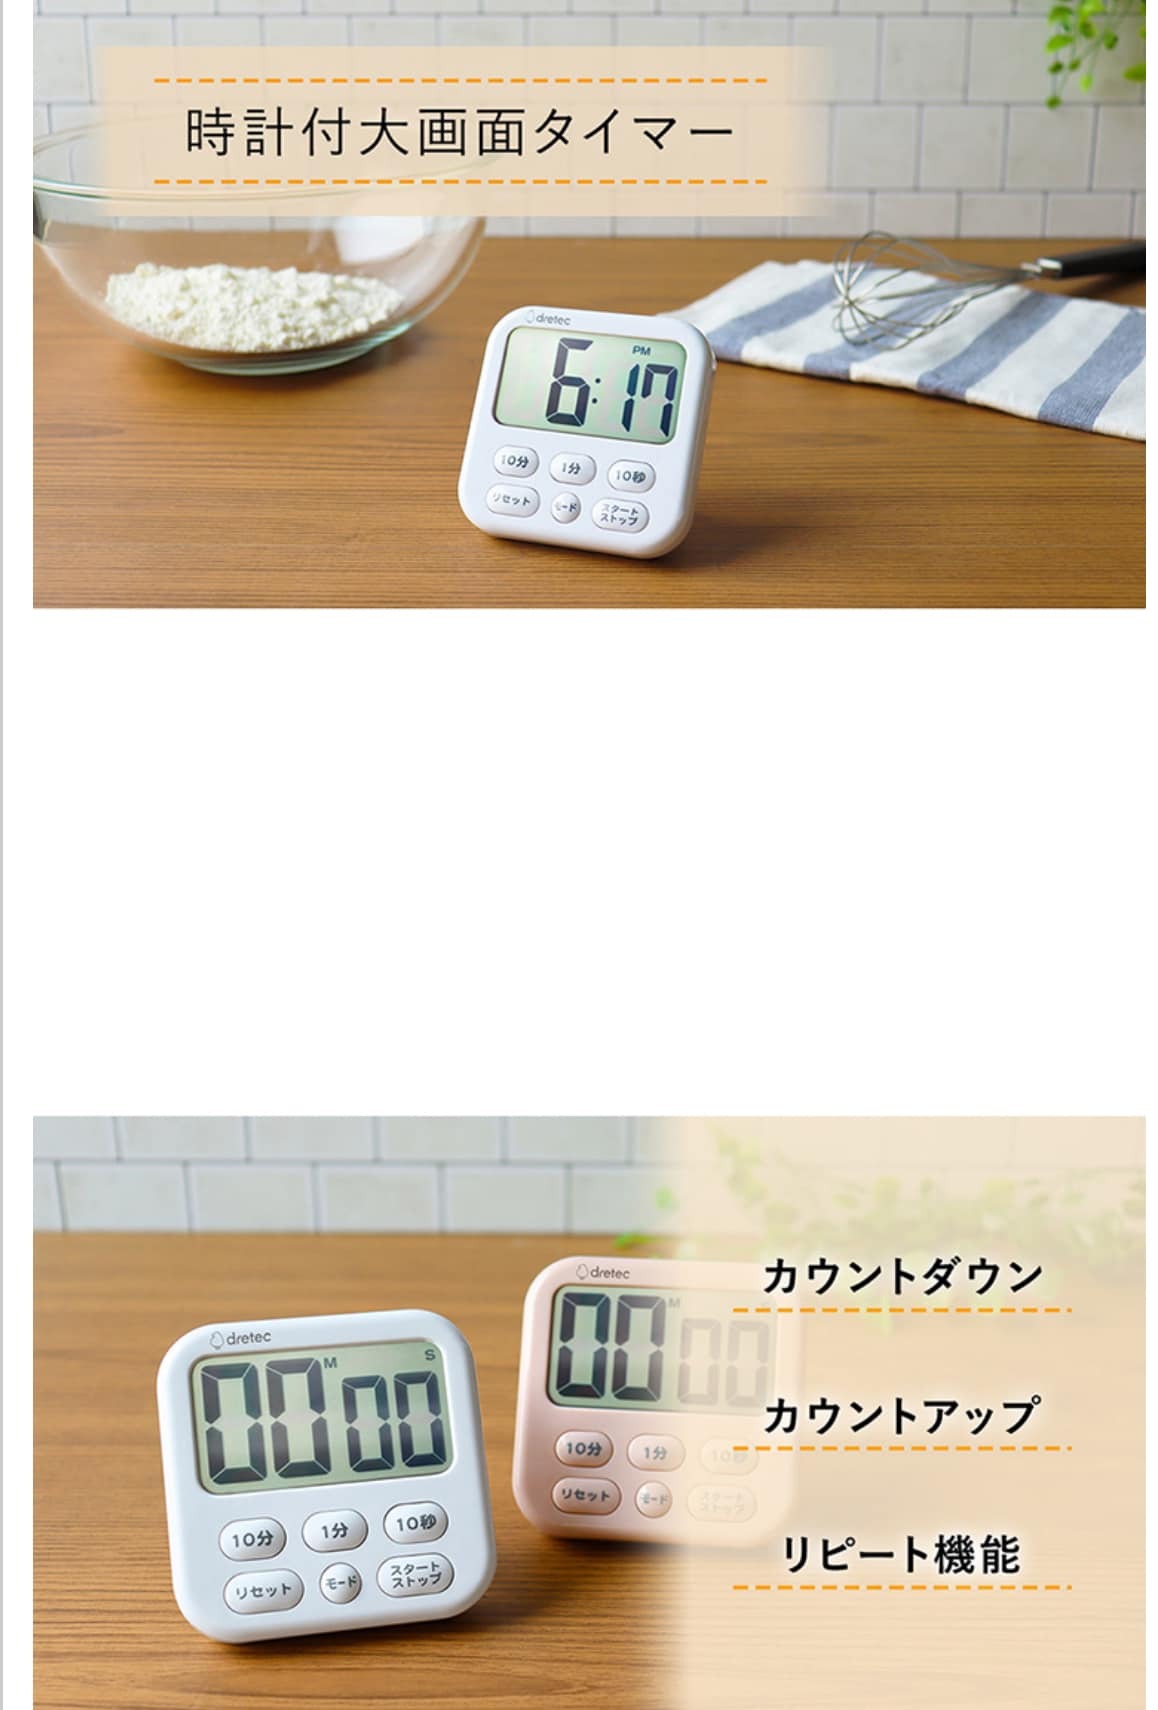 日本餐具 DRETEC大螢幕時鐘烹飪料理計時器 王球餐具 (2)